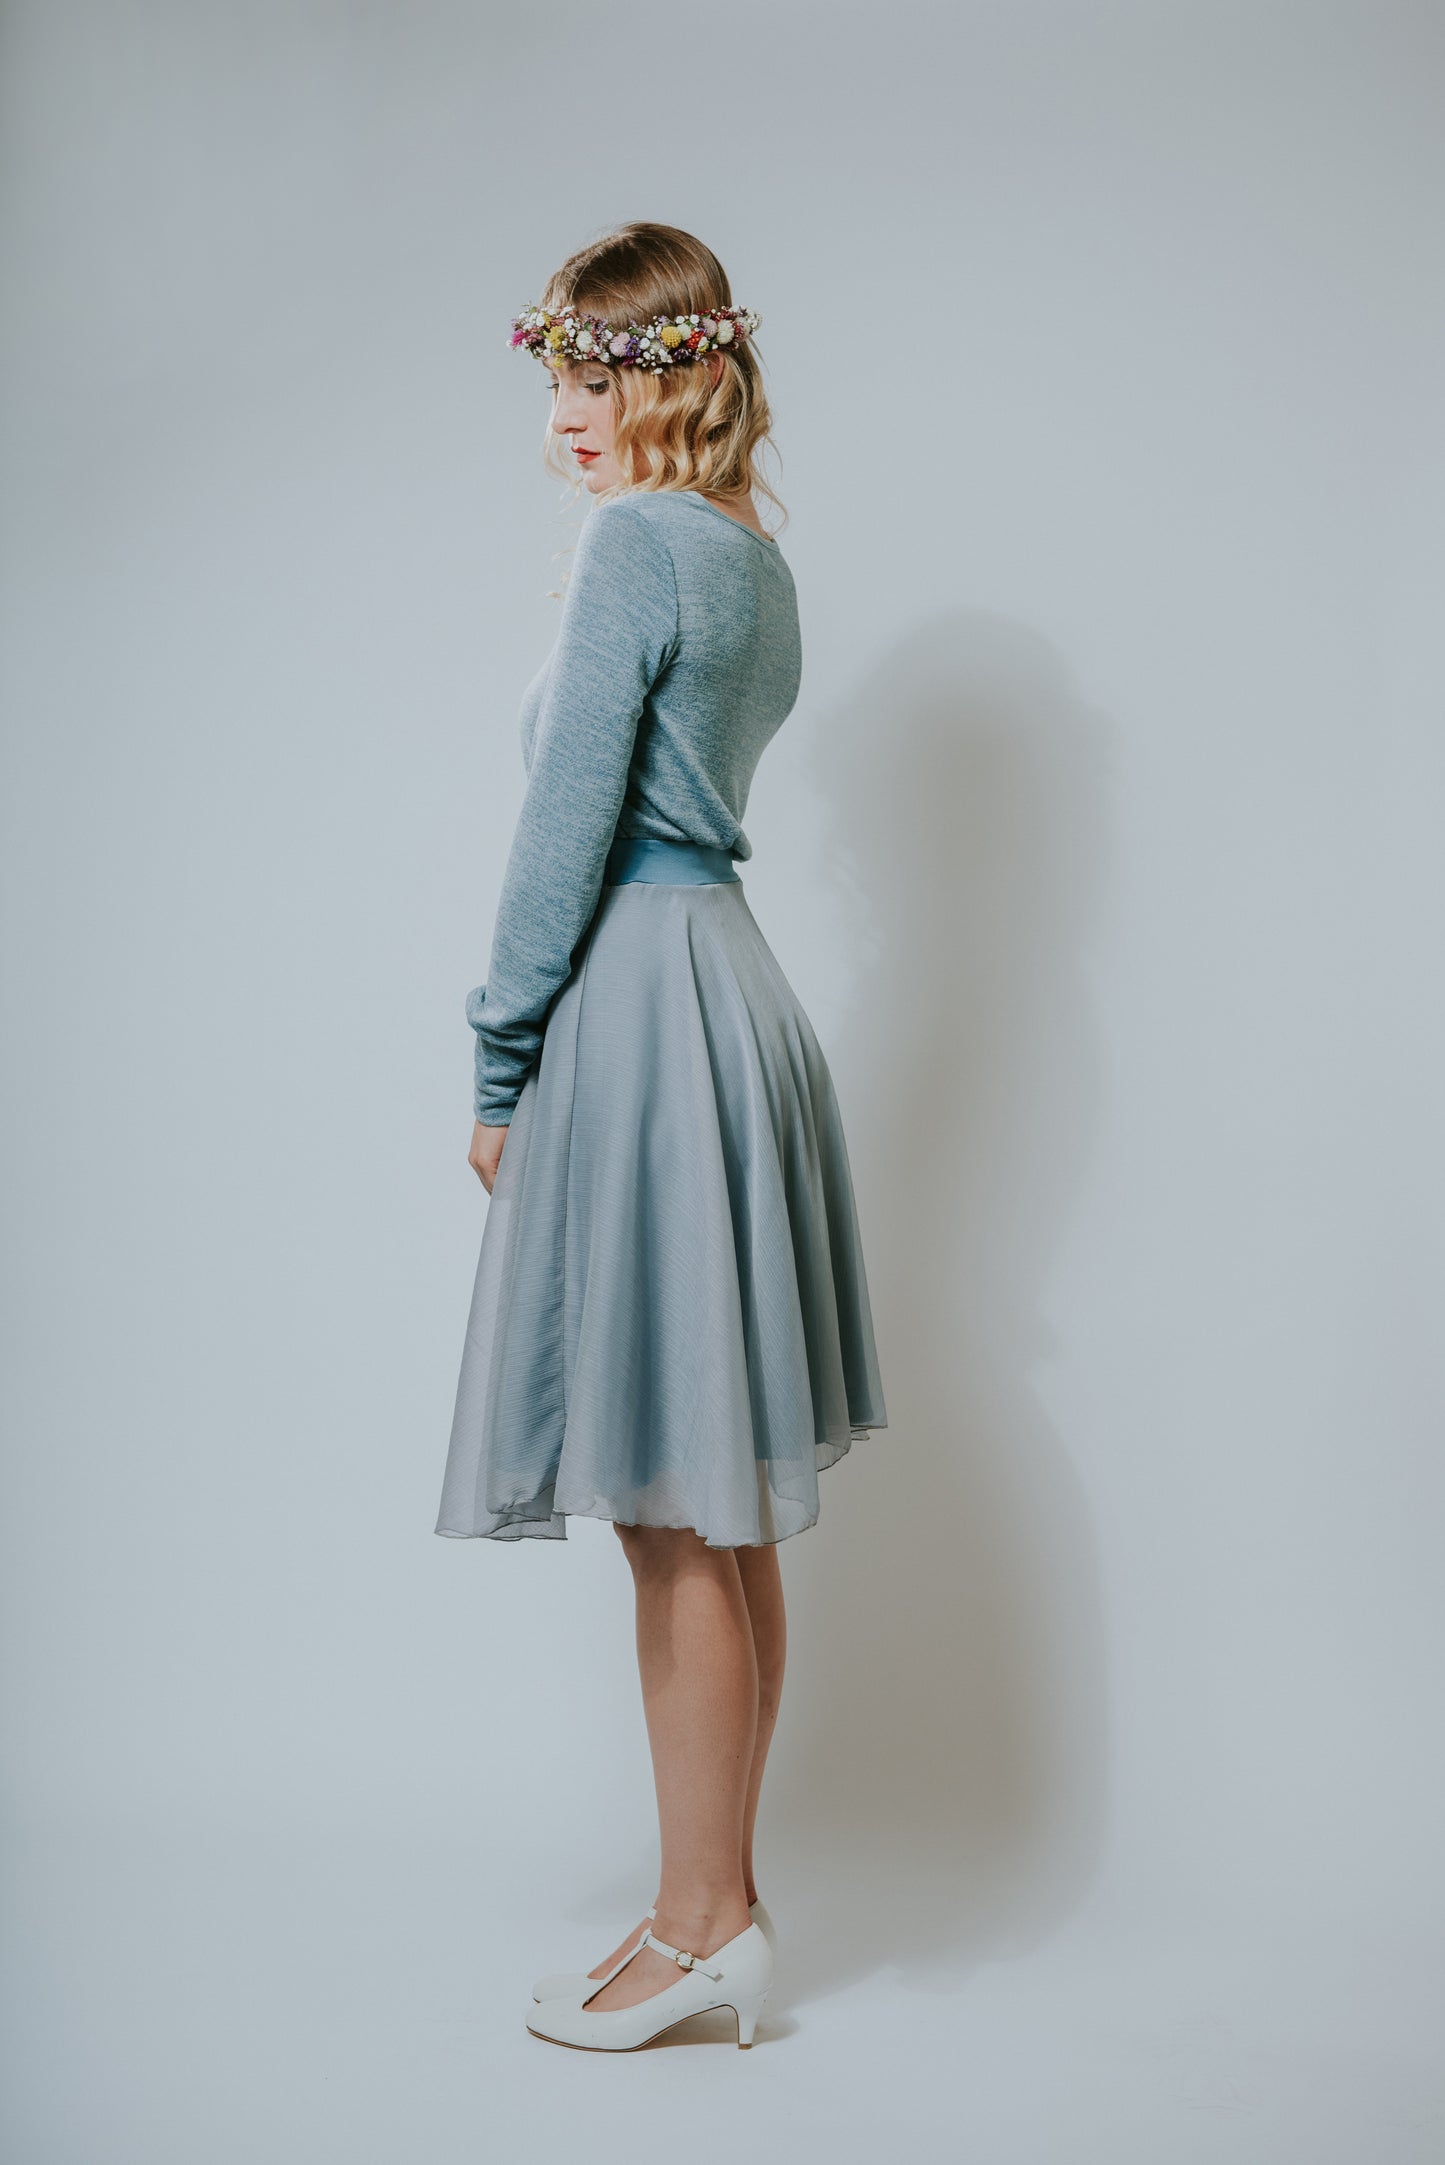 Chiffon Kleid in pudrigem Taubenblau mit einem lässig, legerem Feinstrickoberteil